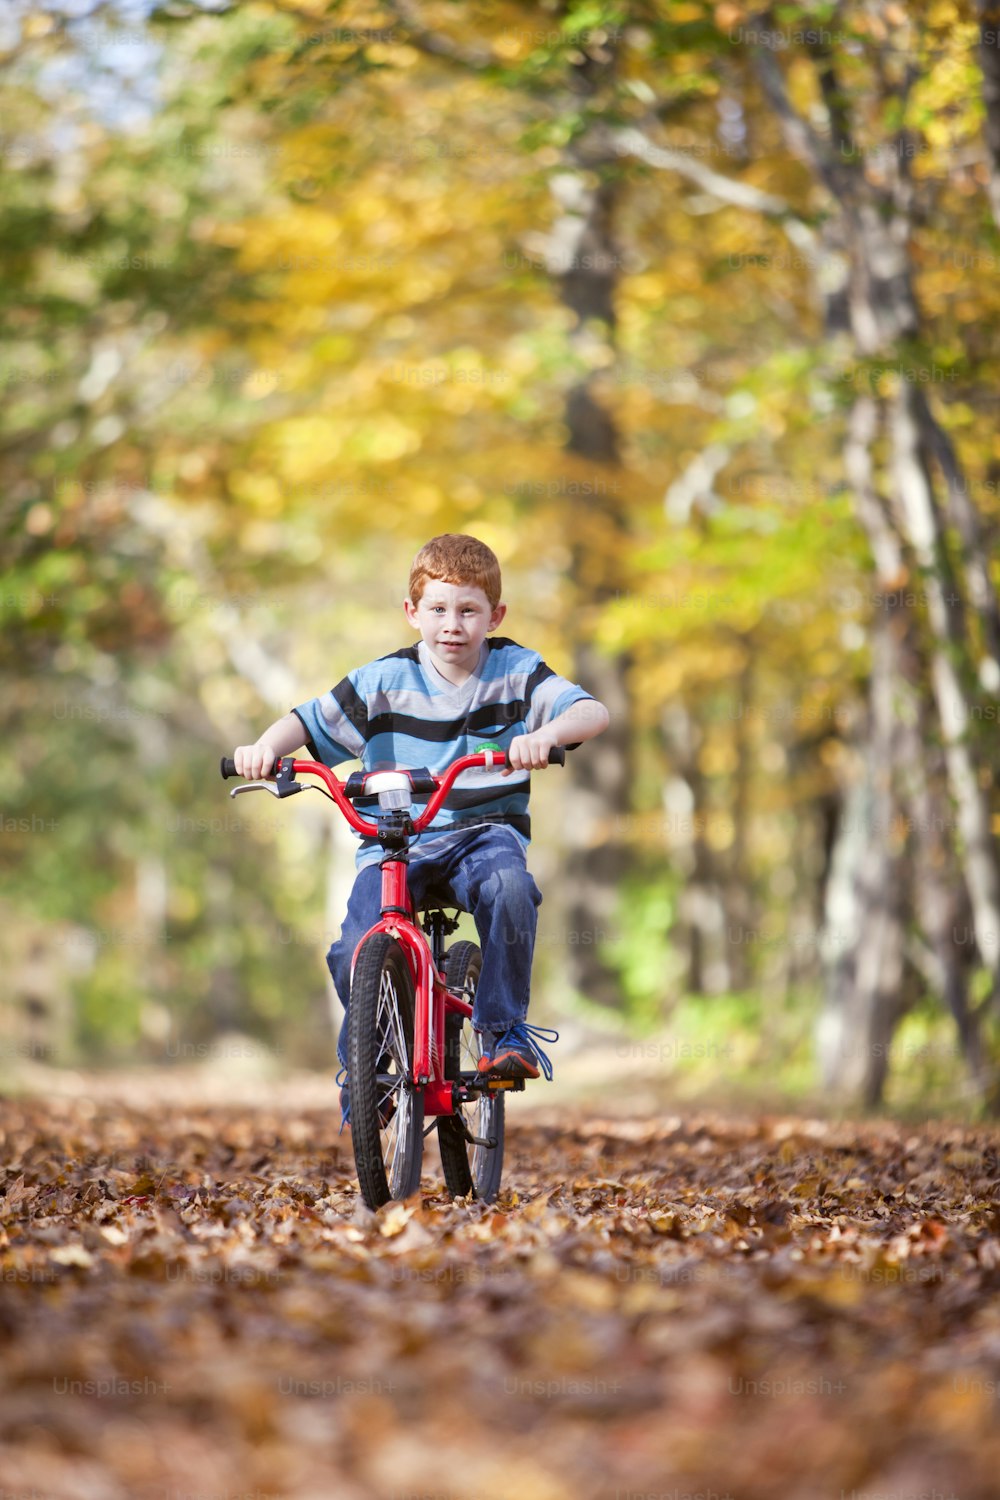 Giovane ragazzo con bici sul percorso durante l'autunno